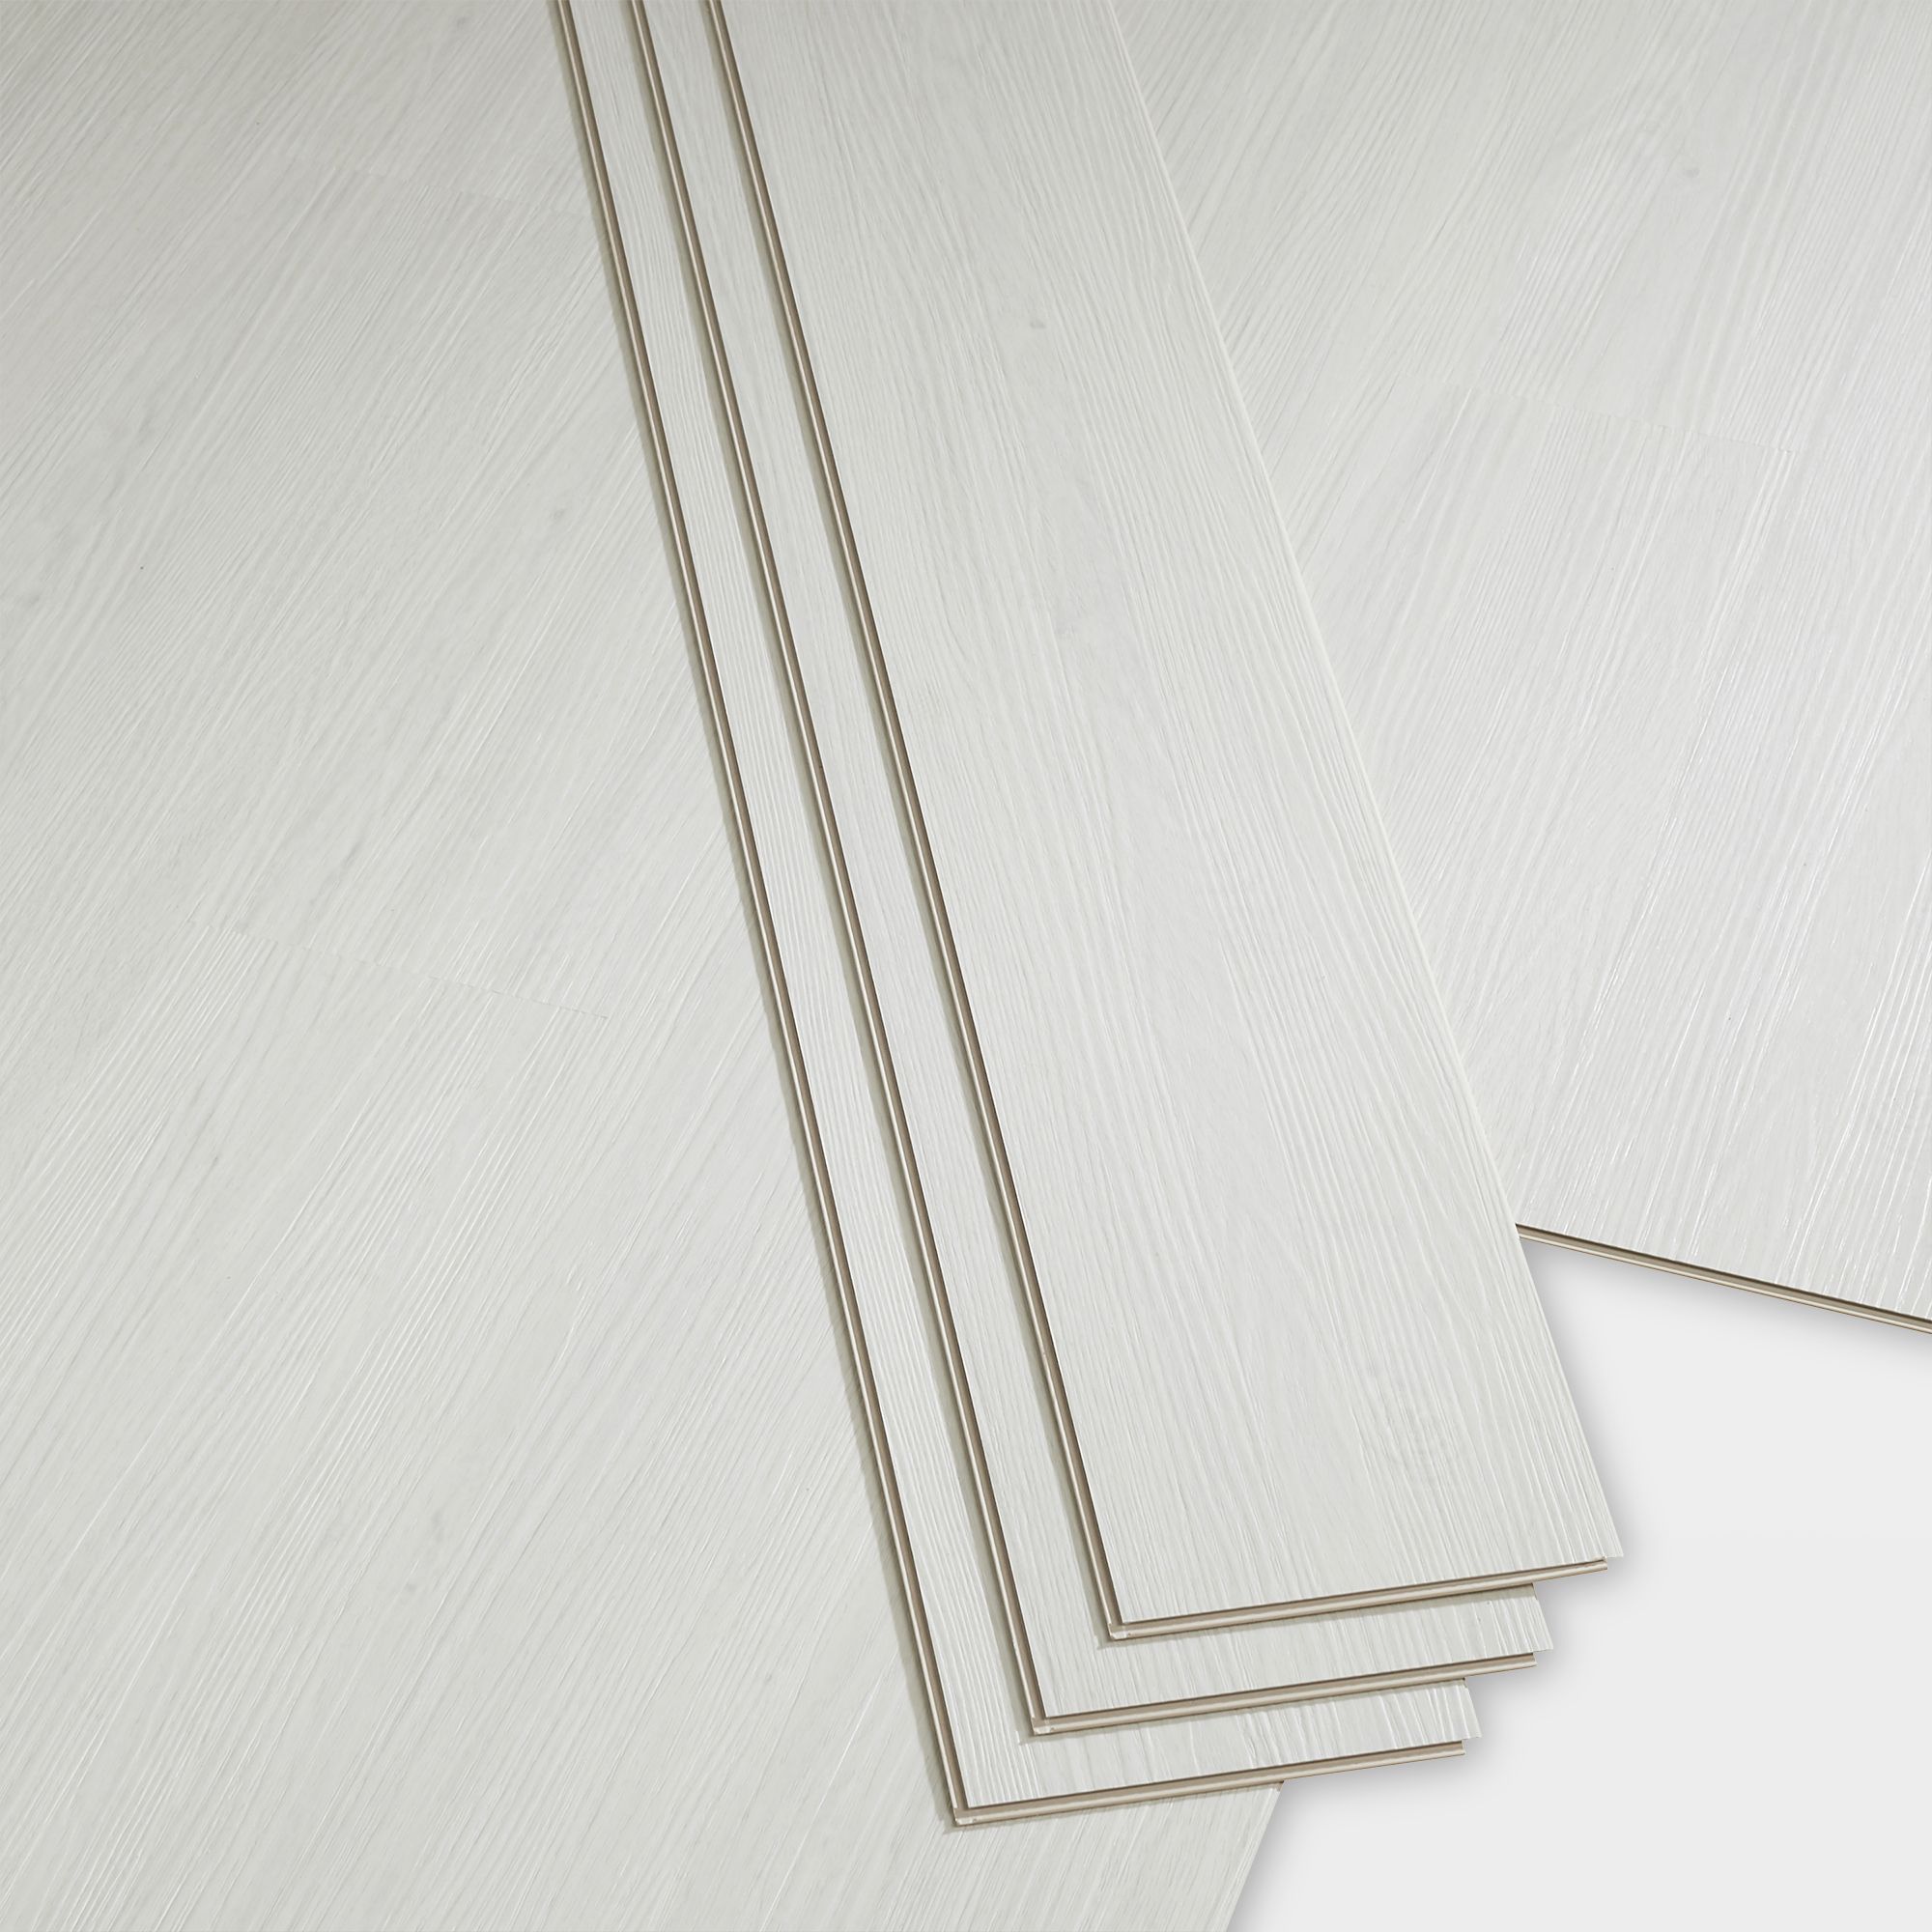 Folk White Wood effect Planks Sample of 1